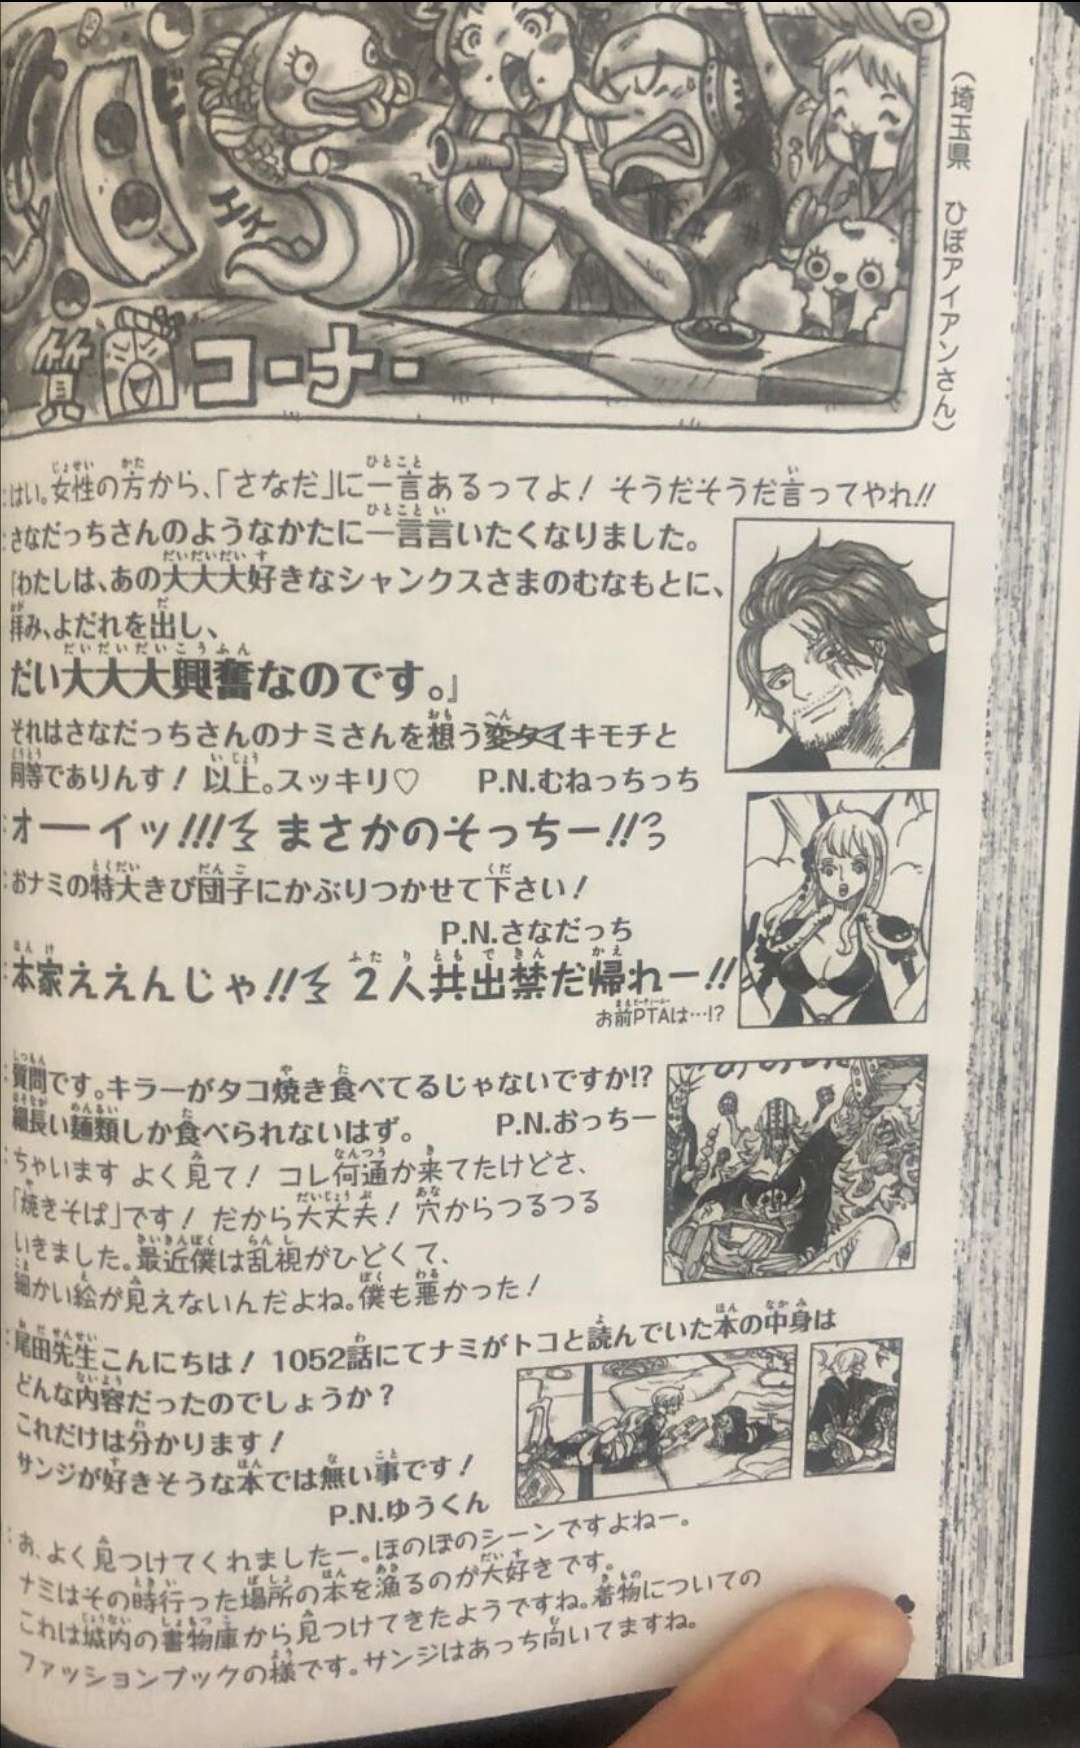 Tổng hợp những thông tin thú vị được tác giả Oda tiết lộ trong SBS One Piece số 105